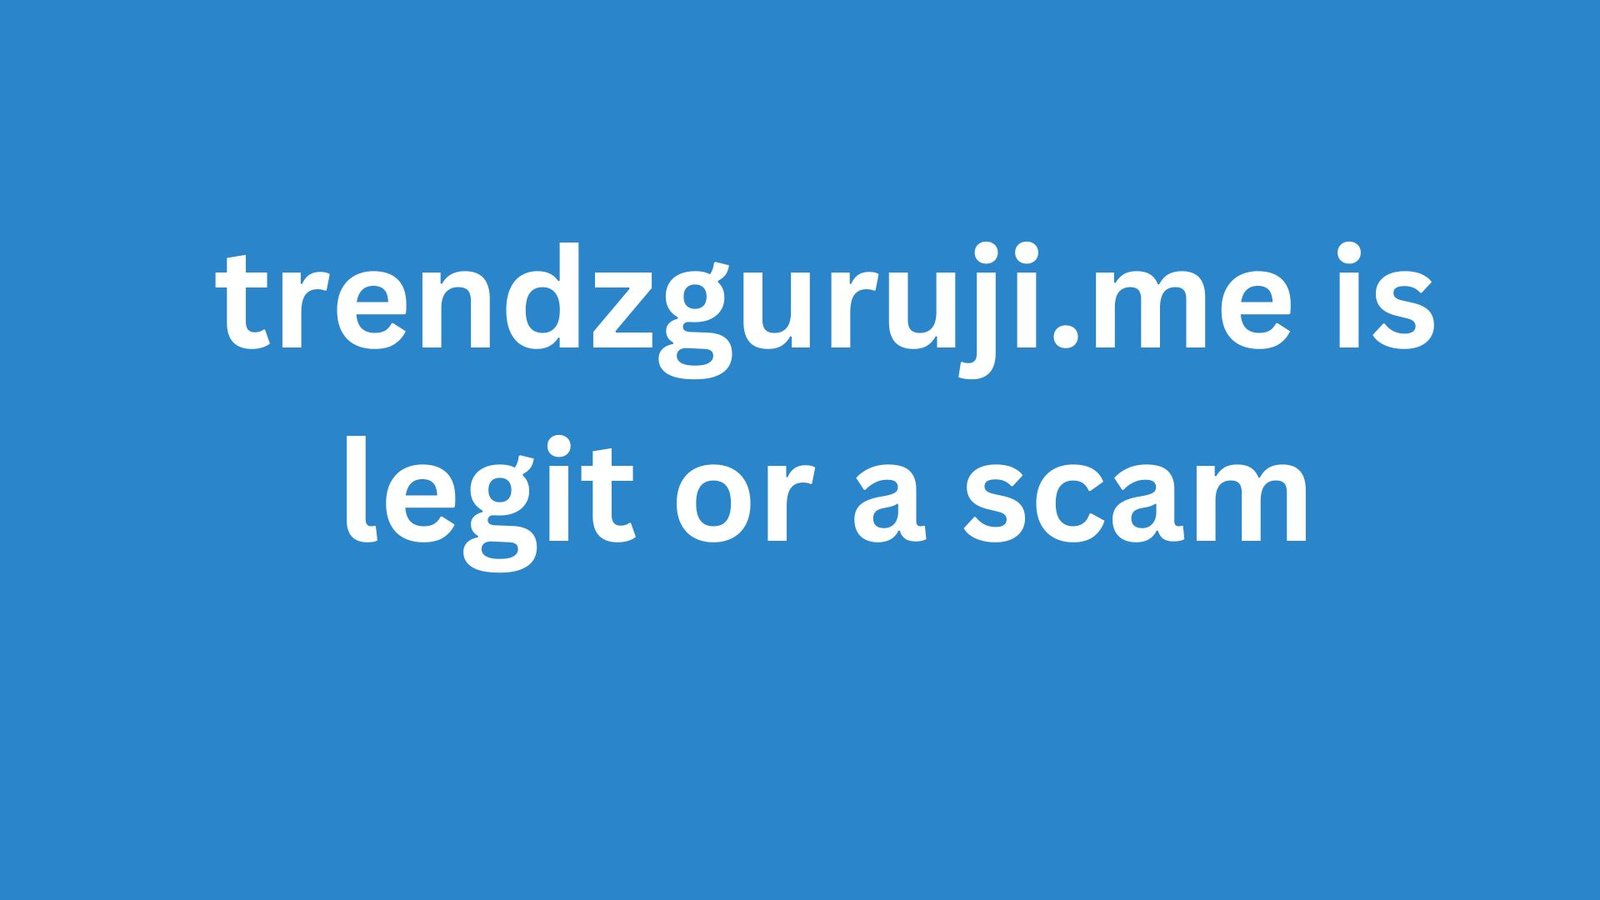 trendzguruji.me is legit or a scam